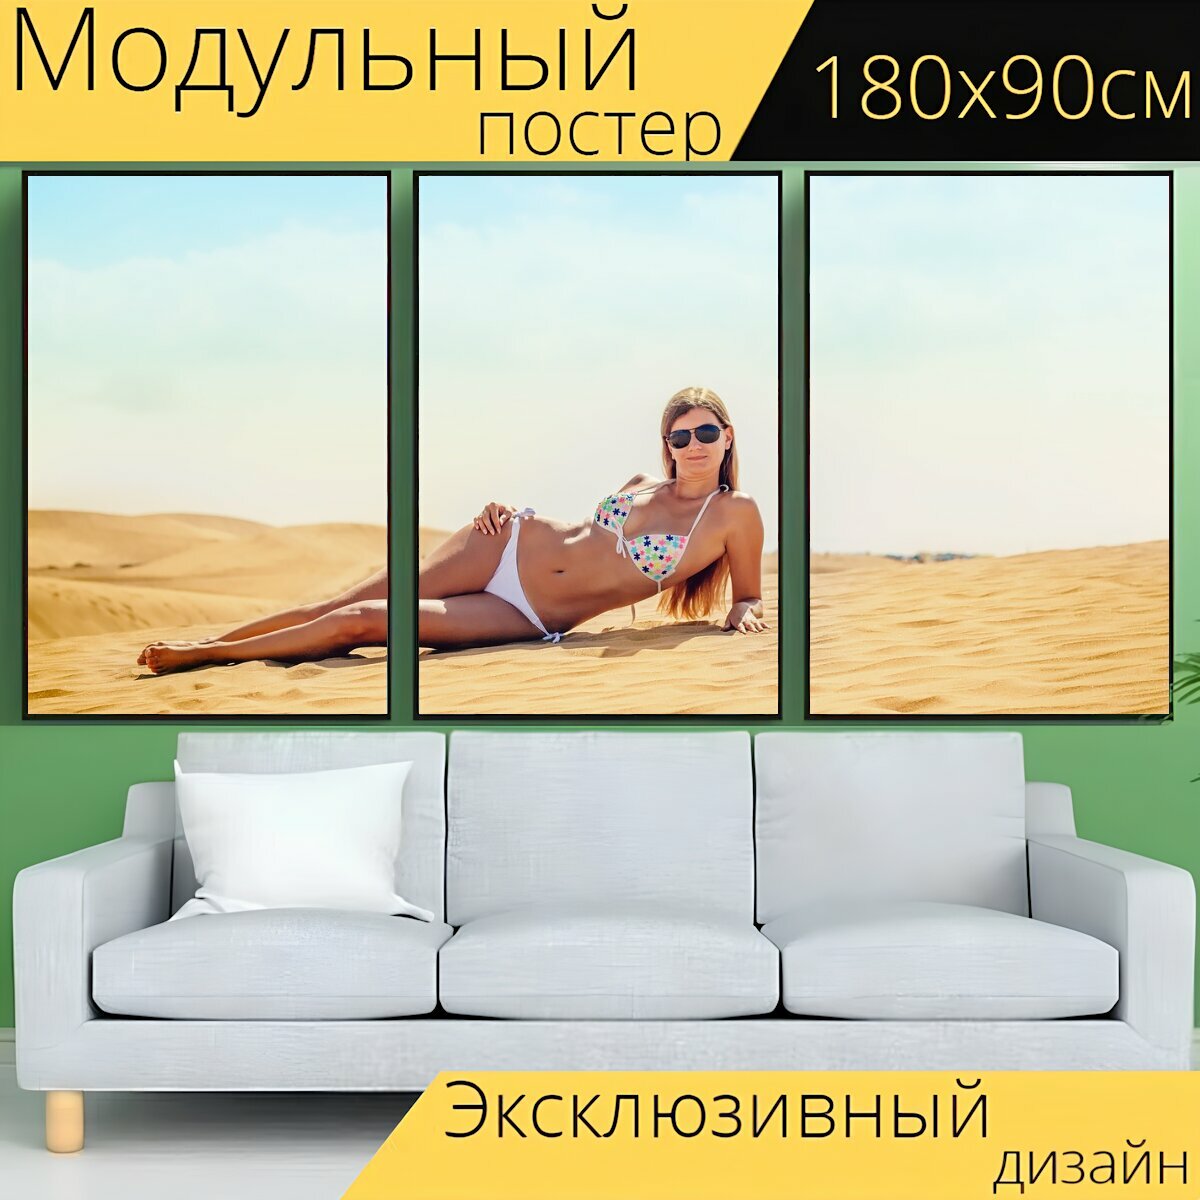 Модульный постер "Бикини, летом, пляж" 180 x 90 см. для интерьера